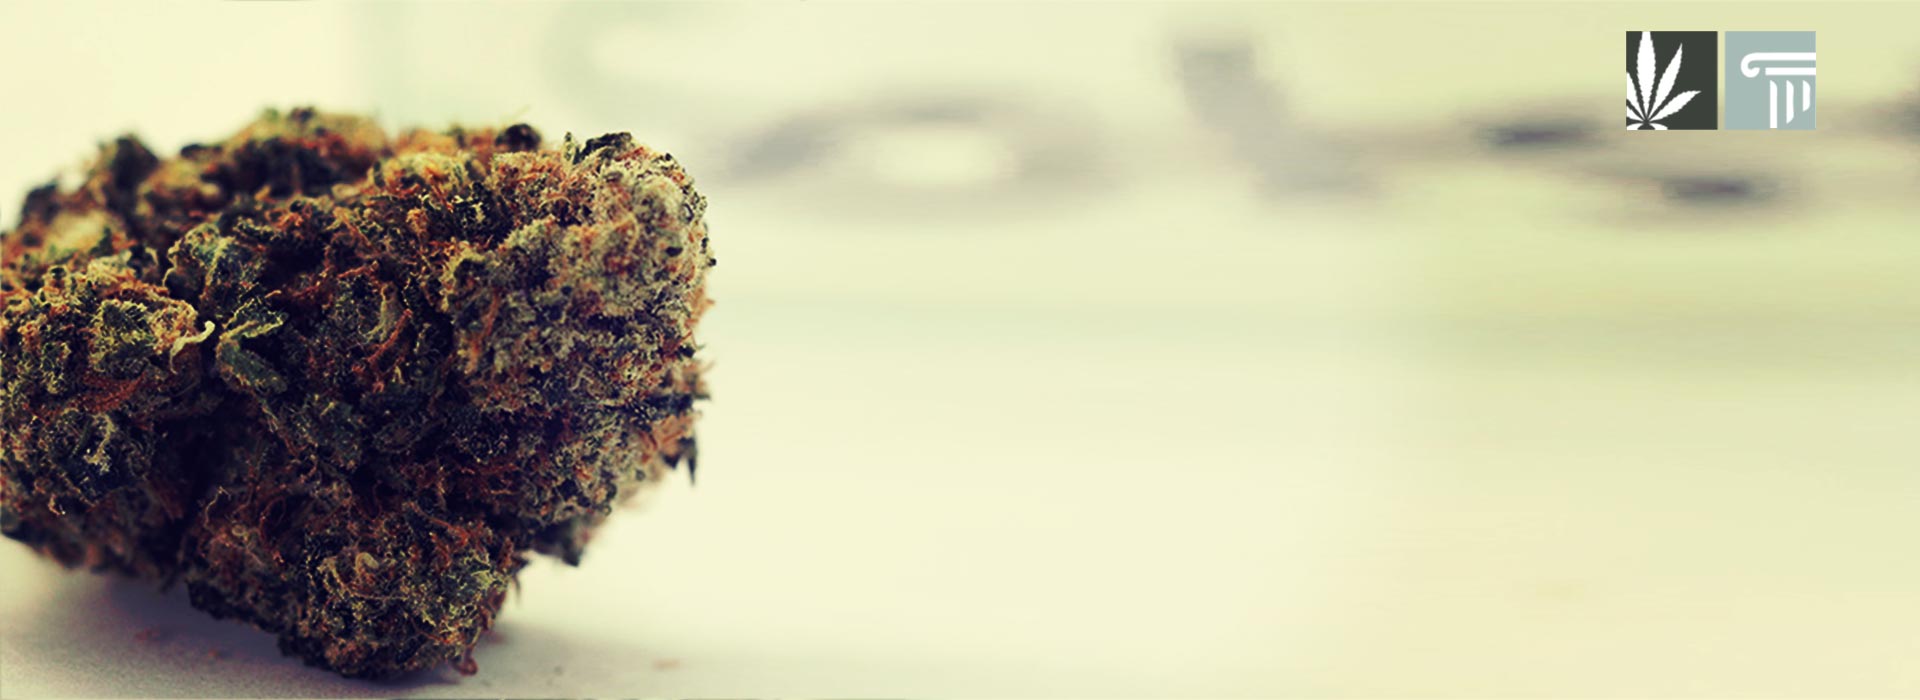 pennsylvania discusses marijuana legalization